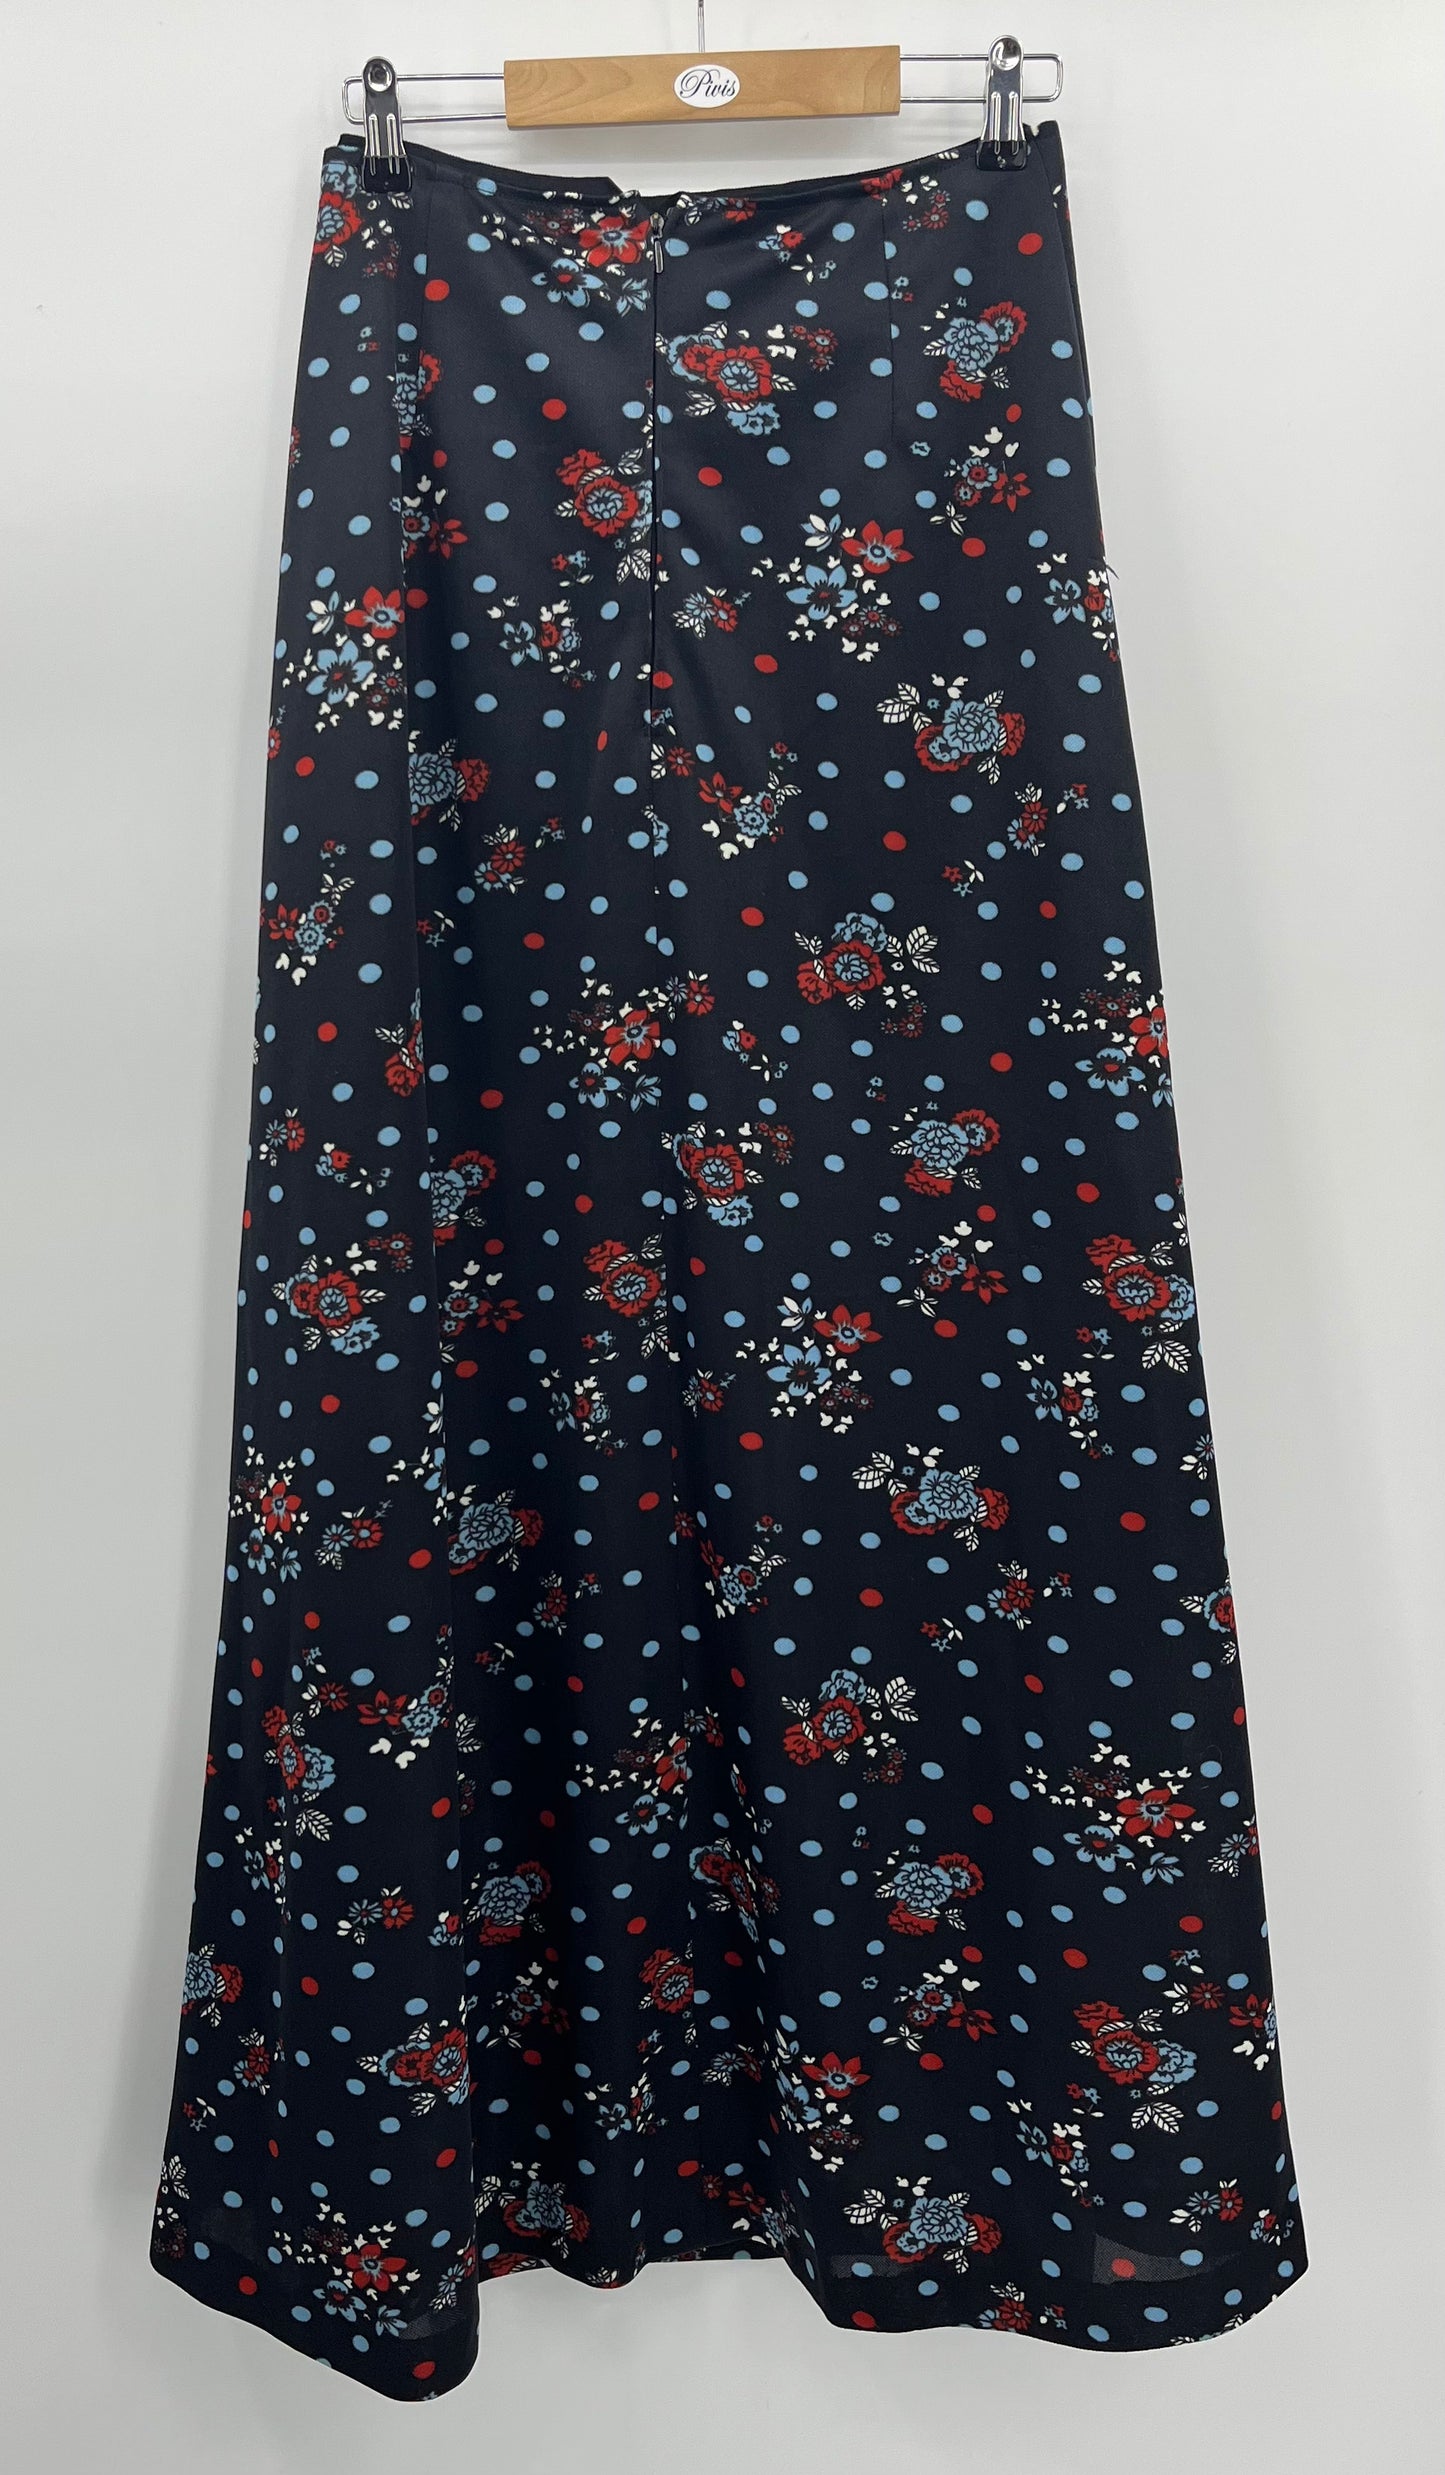 Tummansininen A-linjainen hame, pieni kukkakuvio, 90-luku, vyöt.ymp. 70cm, kokoarvio 36-38